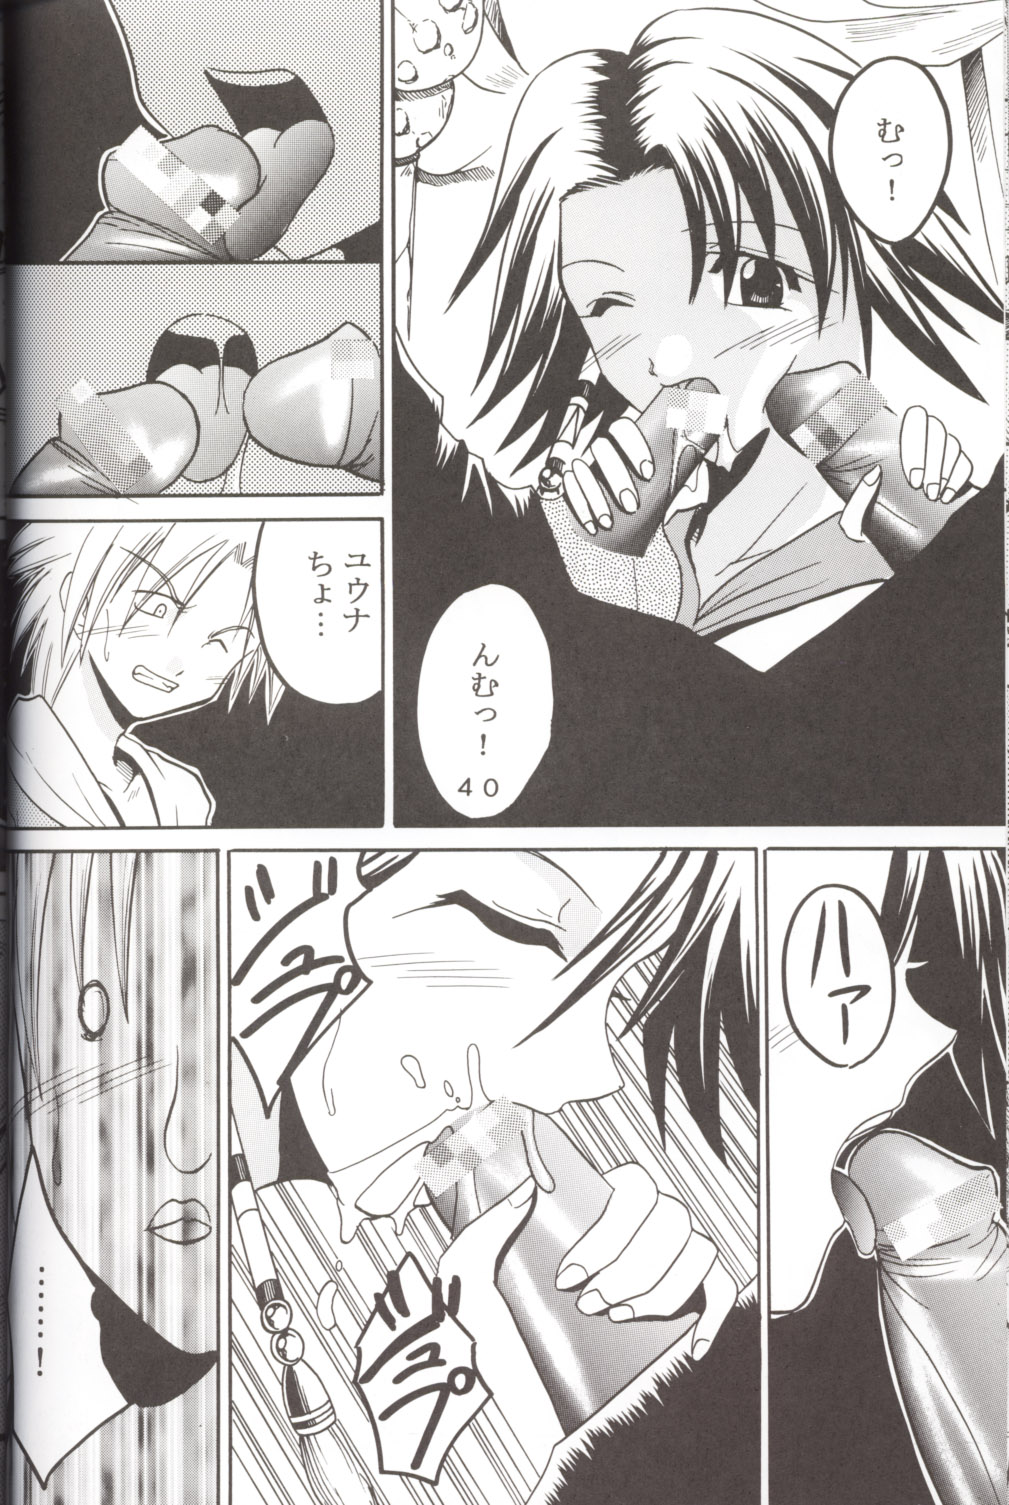 [St. Rio] Yuna a la Mode 5 (Final Fantasy X) page 41 full